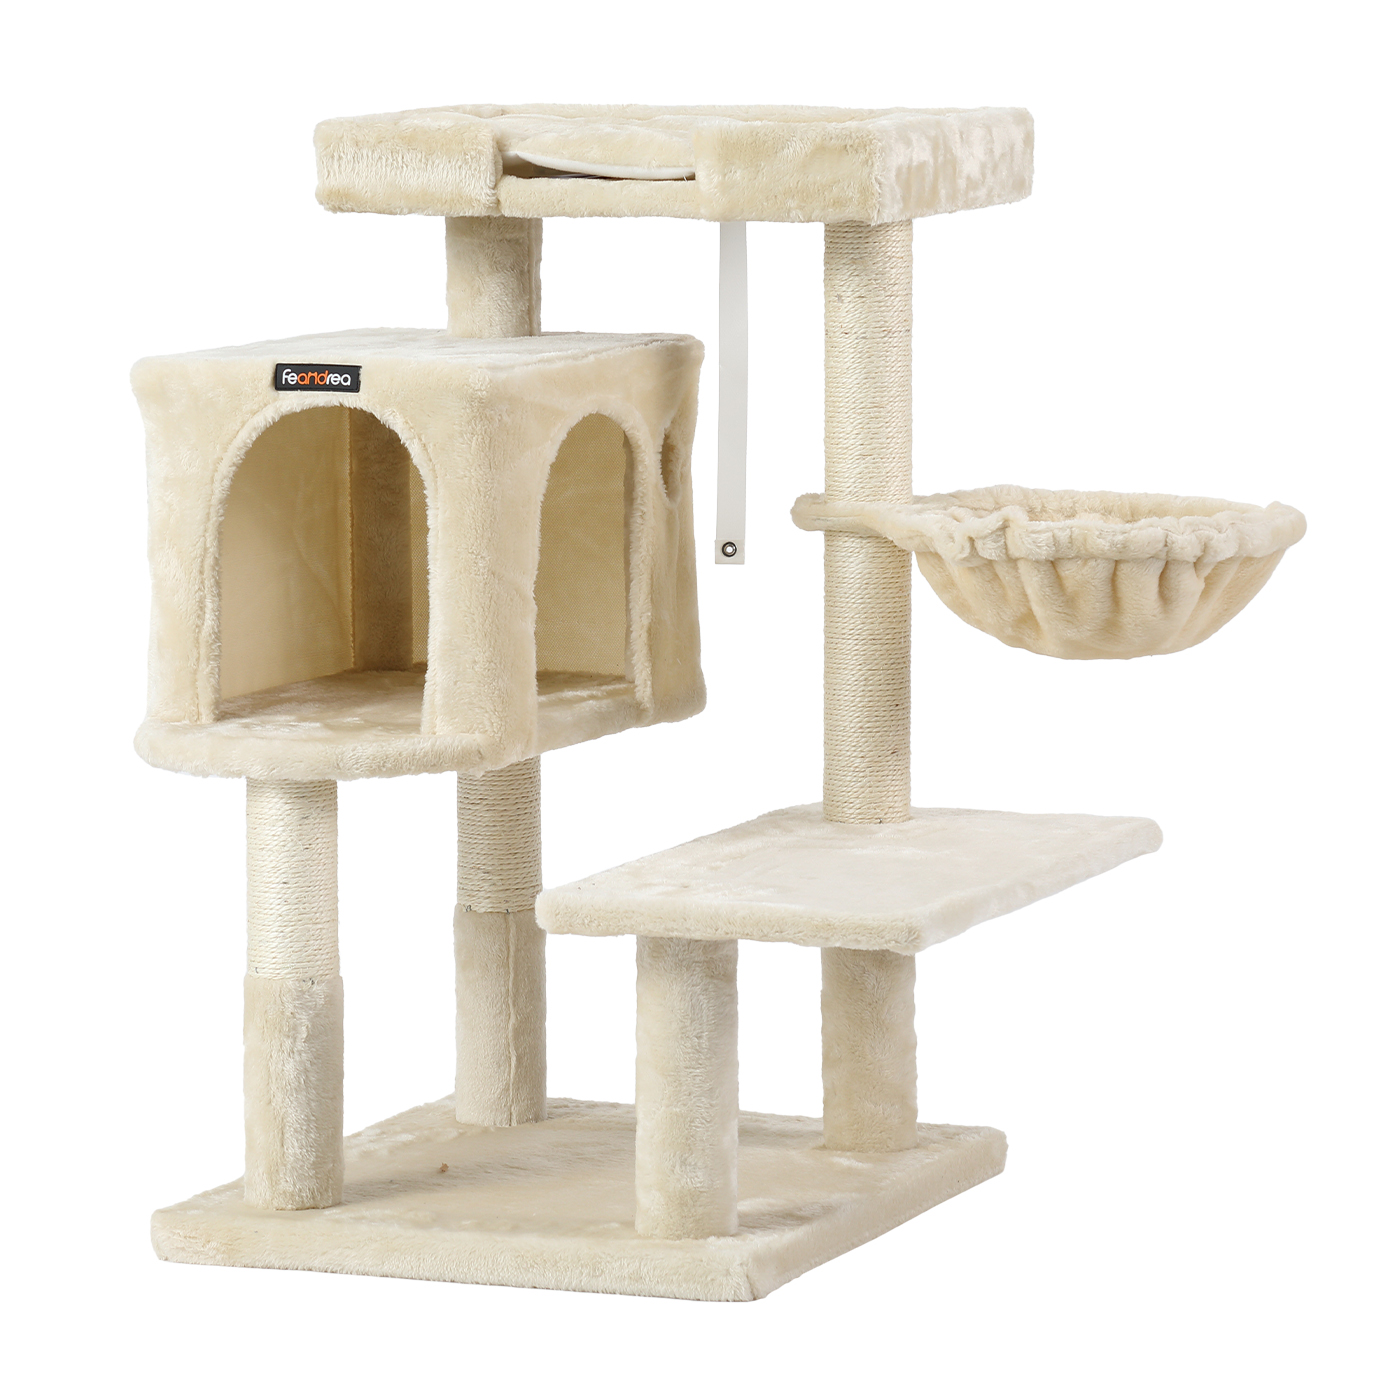 キャットタワー 大型猫 パーツ ベッド もこもこ ボウル 猫 cat SUMIKA 木製 キャットタワー専用 シープボア ハンモック